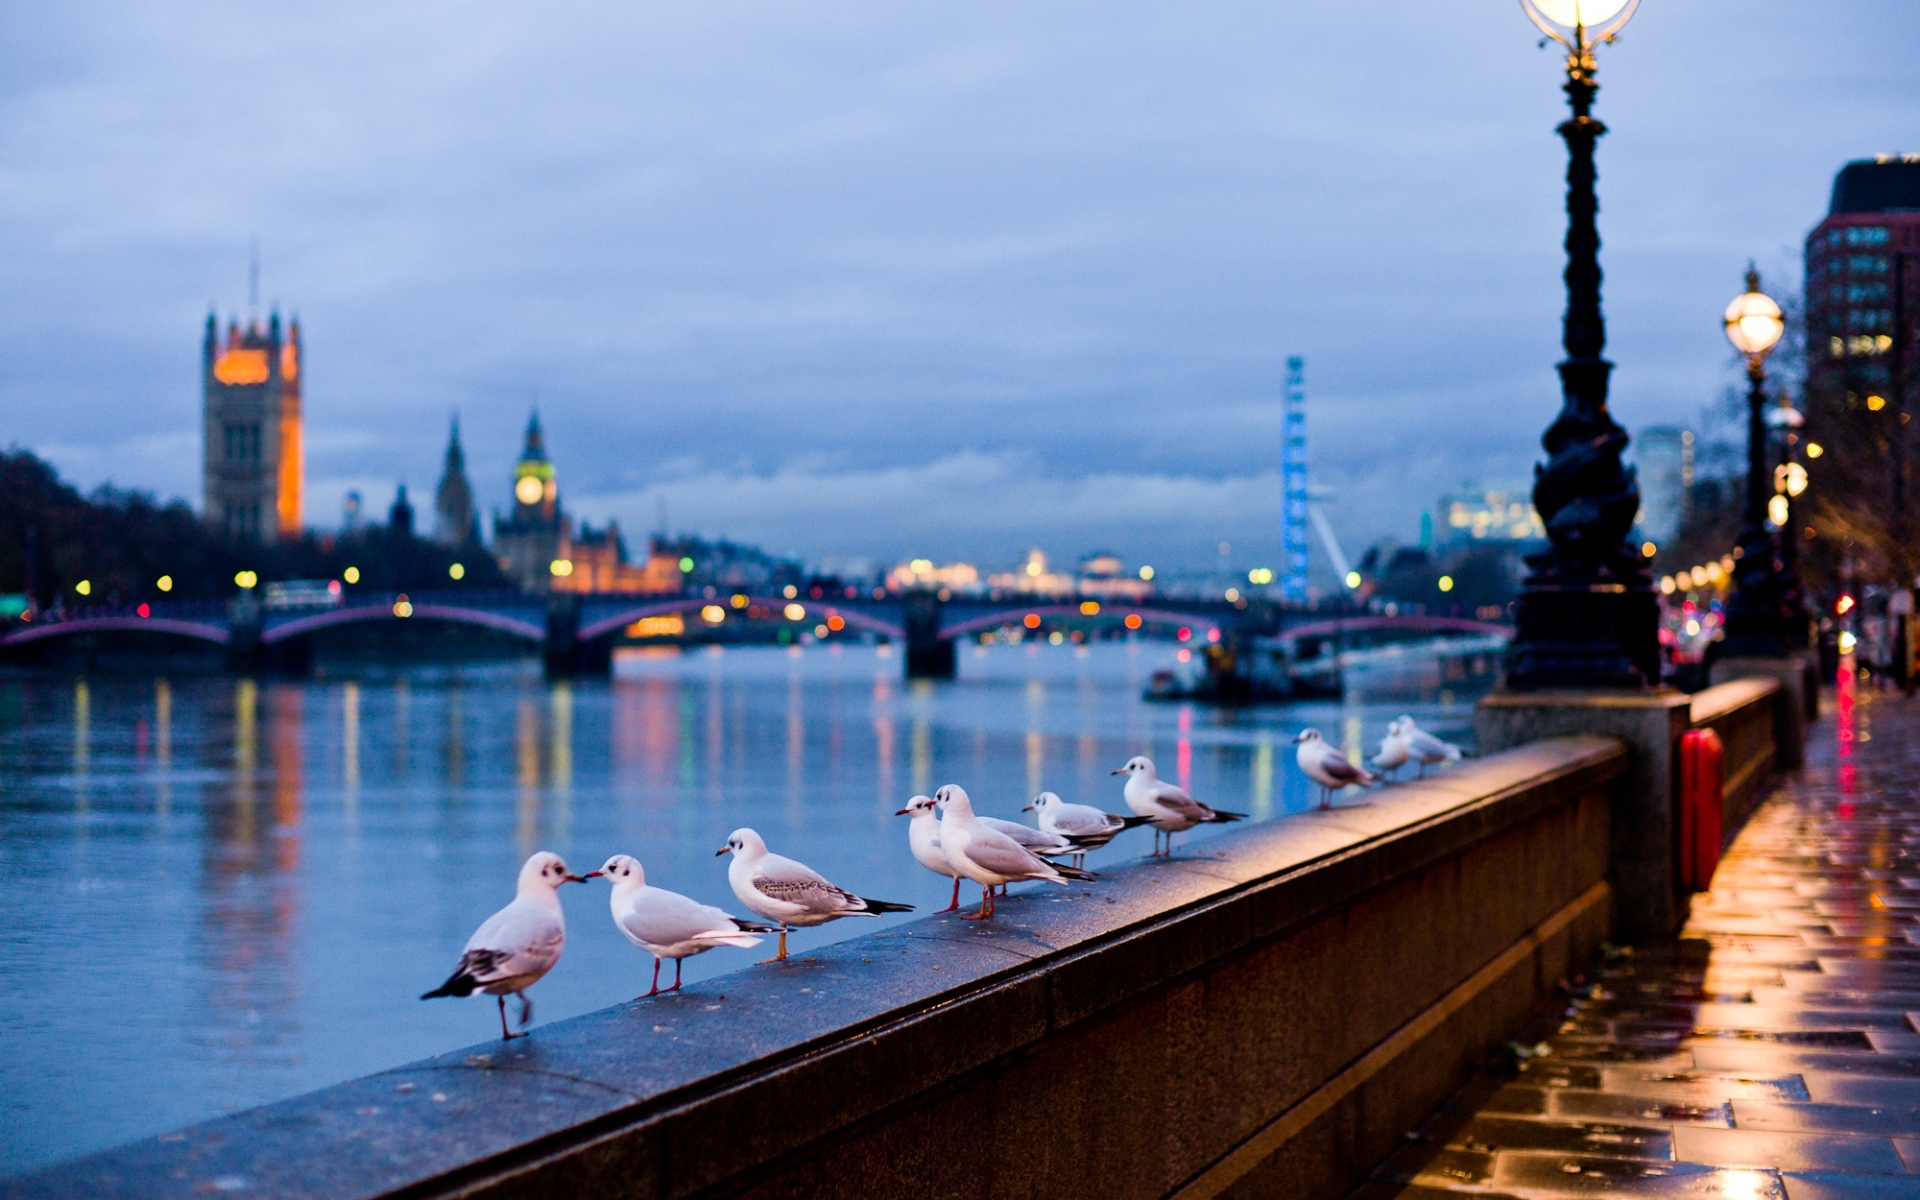 Картинки Город, лондон, англия, улица, река, чайки, лампы, свет, боке фото и обои на рабочий стол